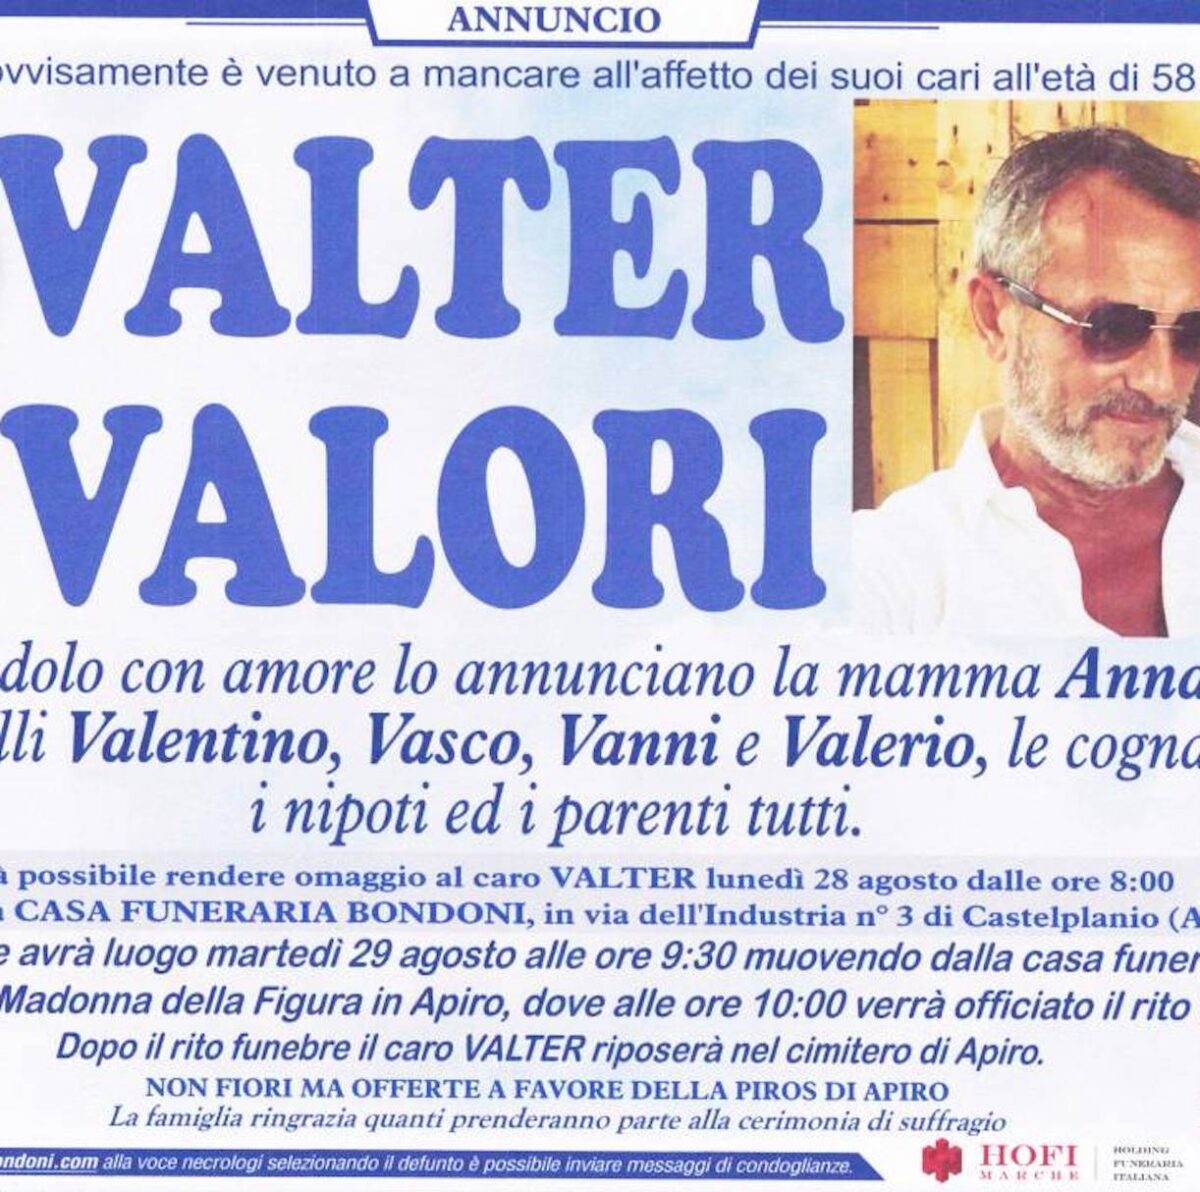 Valter Valori, trovato morto a casa: aveva 58 anni